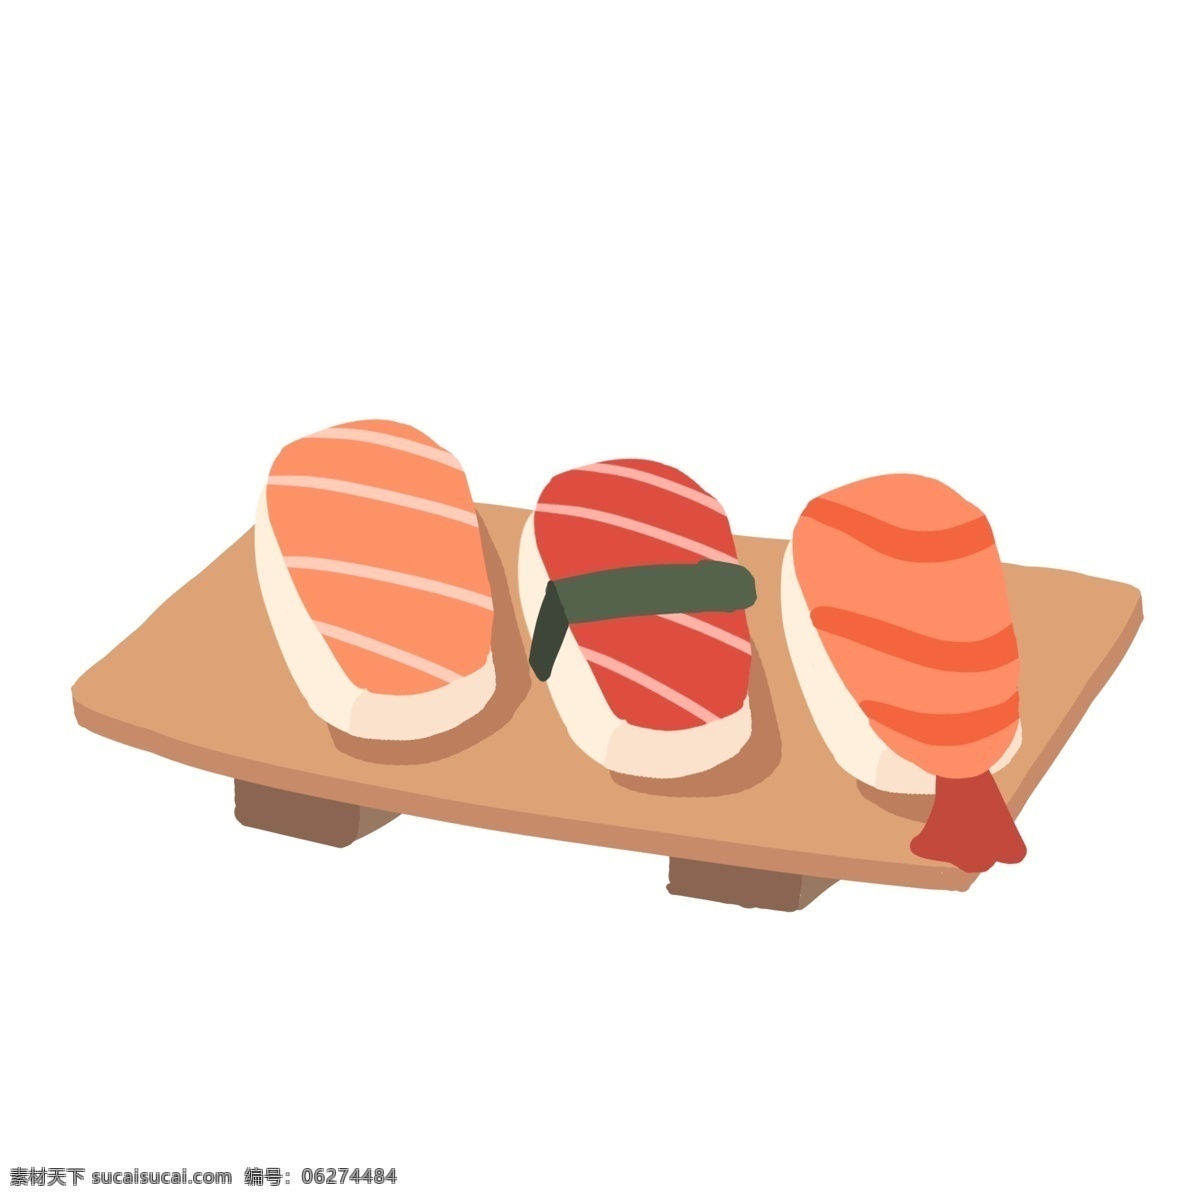 日本 海鲜 寿司 插画 日版寿司 海鲜寿司 三文鱼寿司 大虾寿司 木质盘子 特色美食 美食 食物 美味的寿司